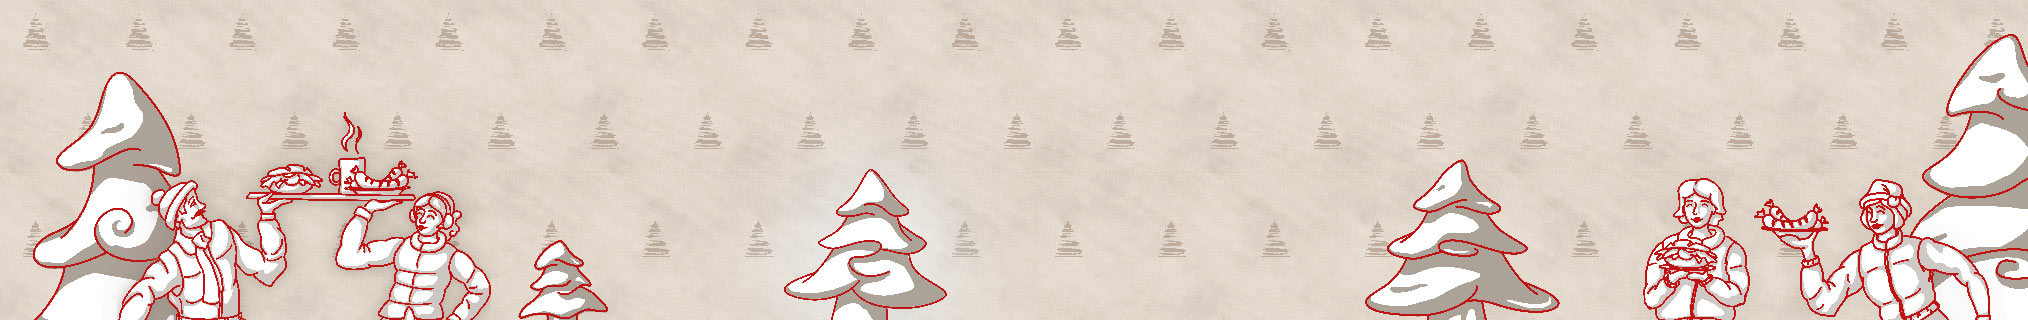 Die Rückwand des Weihnachtsmarktstands der Weihnachtsochsenbraterei München zeigt eine Illustration im Corporate Design der Ochsenbraterei mit Trachtenfiguren und schneebedeckten Nadelbäumen, im Hintergrund ein Muster aus dem Chinatum Logo in Anlehnung an Weihnachtsbäume.